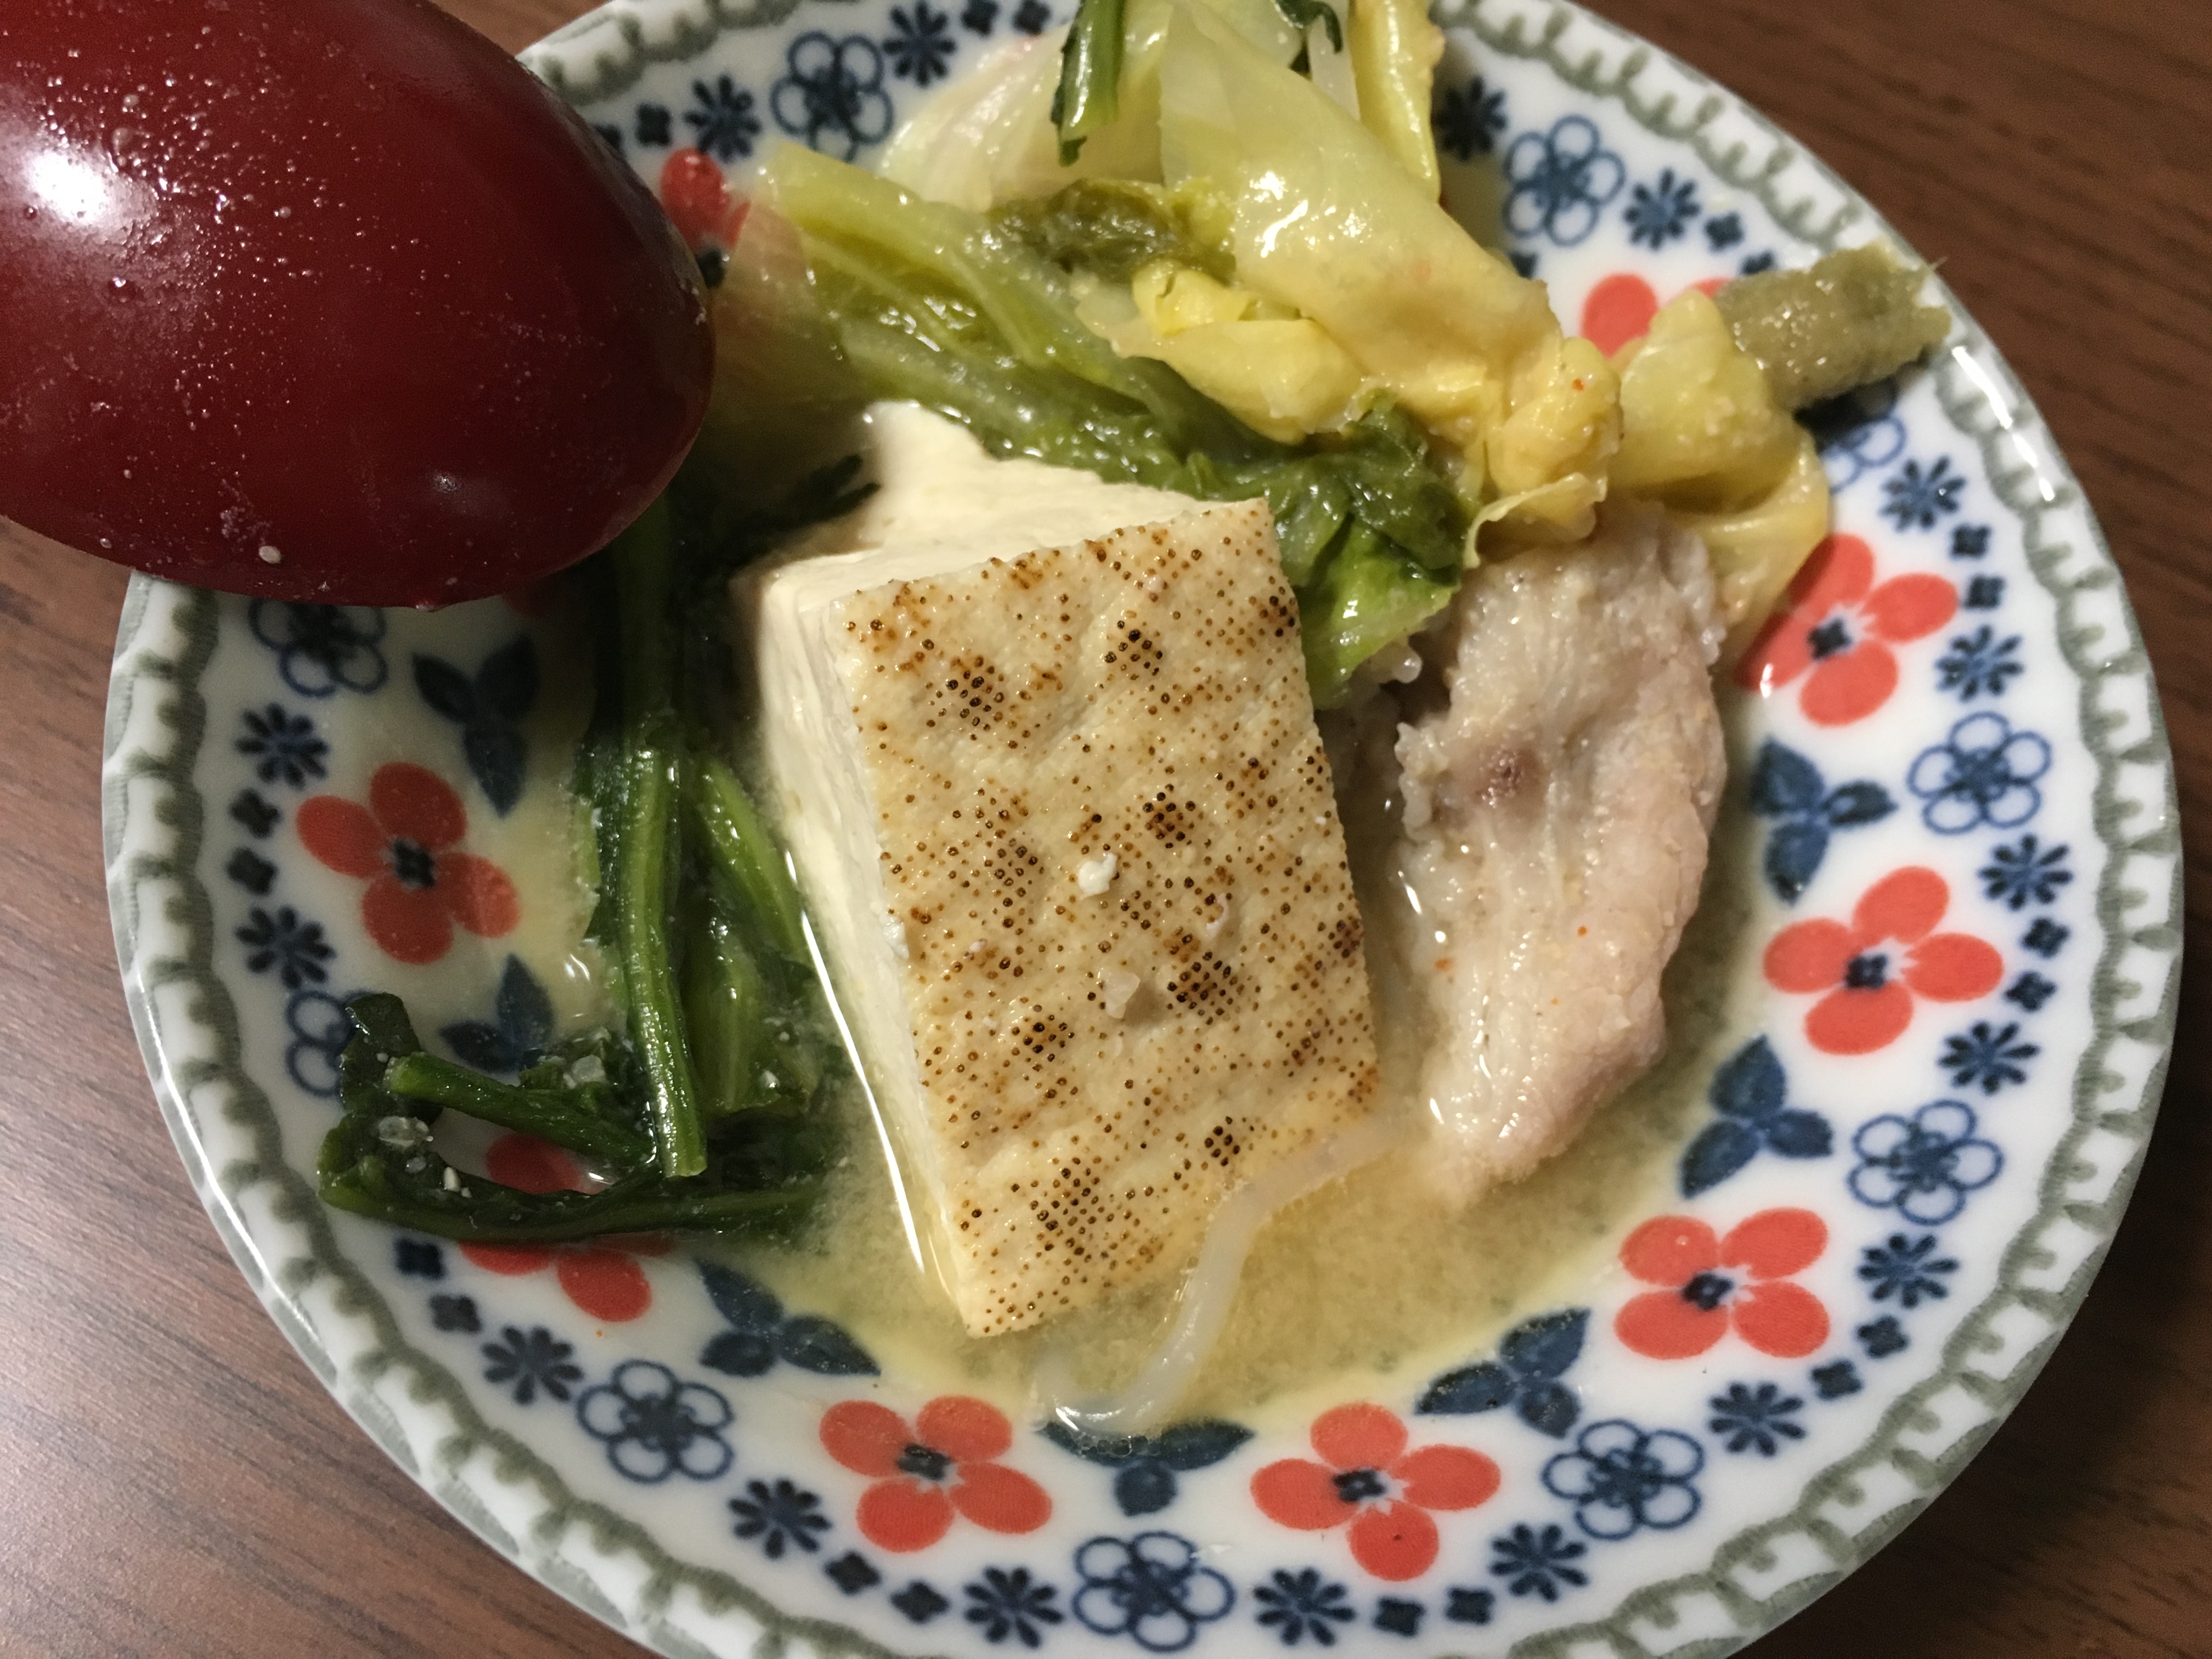 石川県民 とり野菜みそ で喜ぶのは素人 話は ツルヤの鍋みそ を食べてからだ というので食べてみた これは美味 類似品とスルーしてたら損やでコレ ロケットニュース24